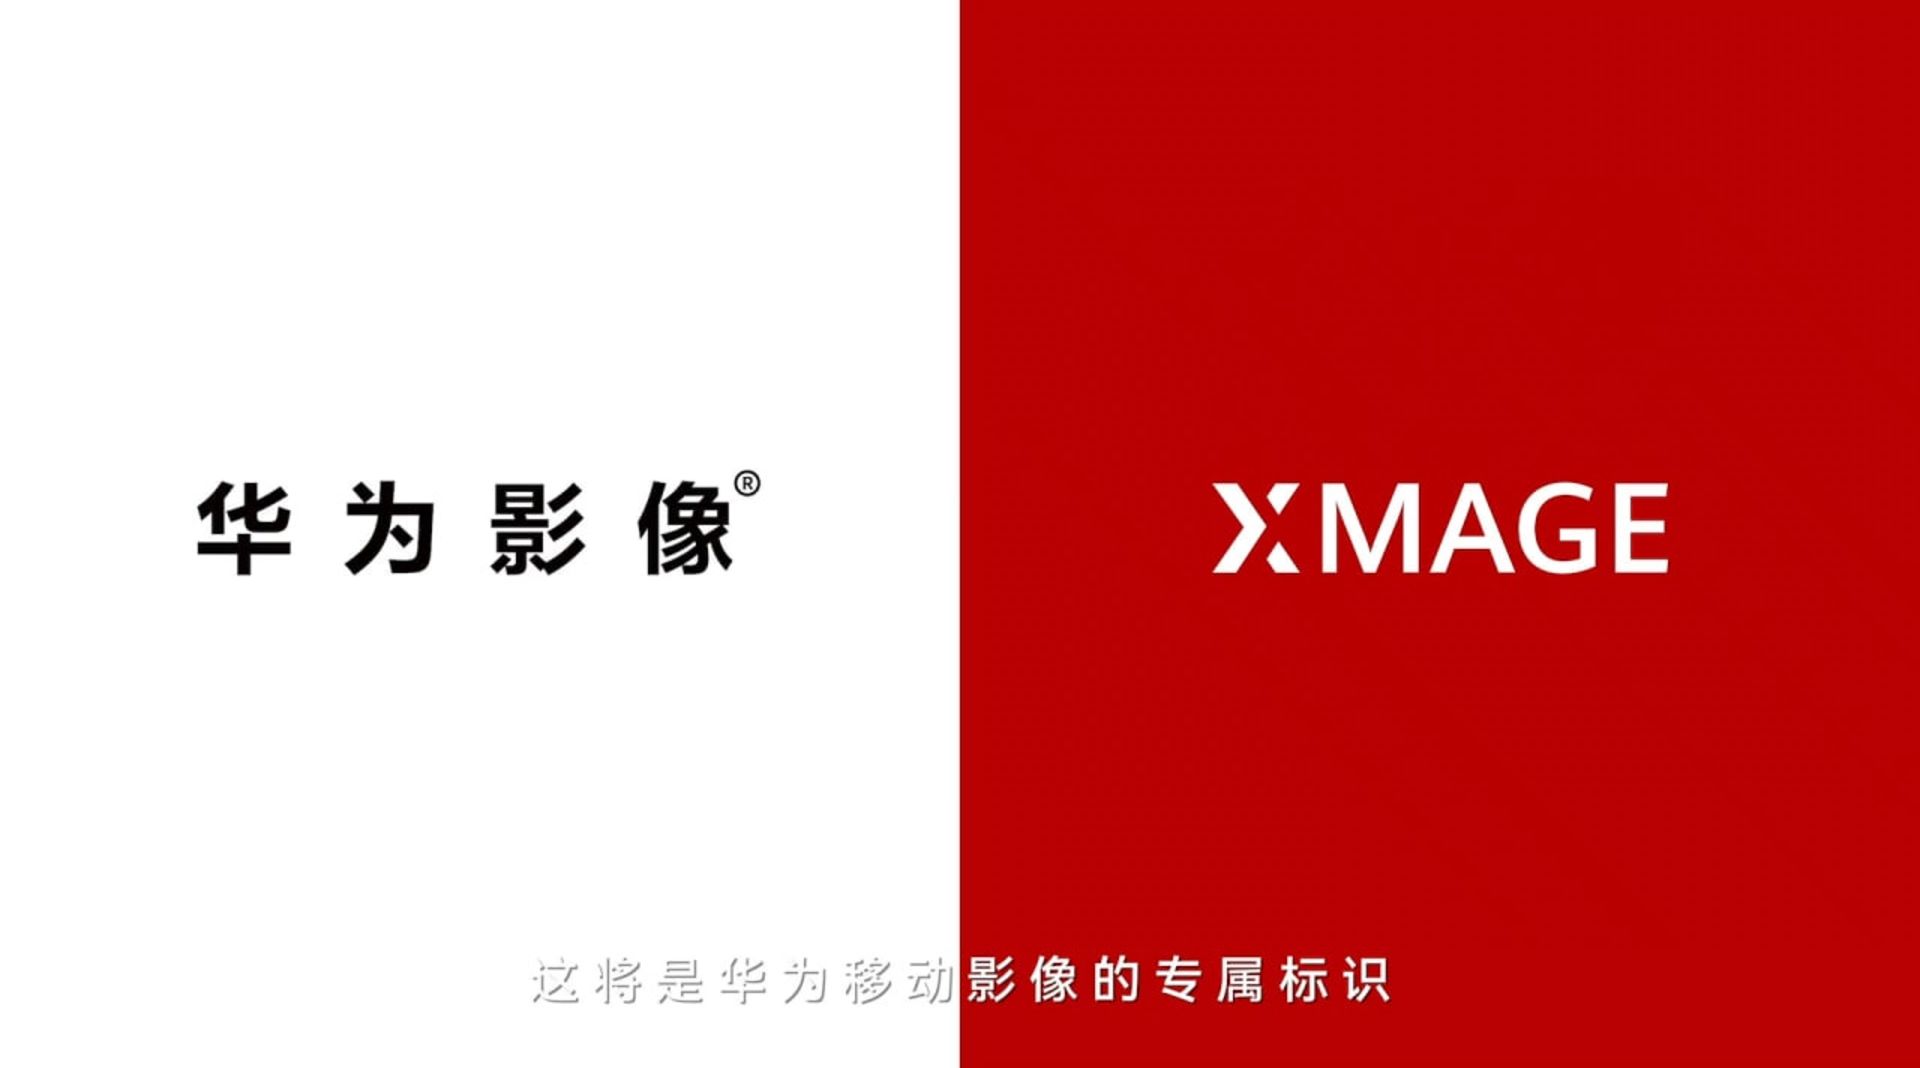 لوگو برند دوربین هواوی Huawei XMAGE